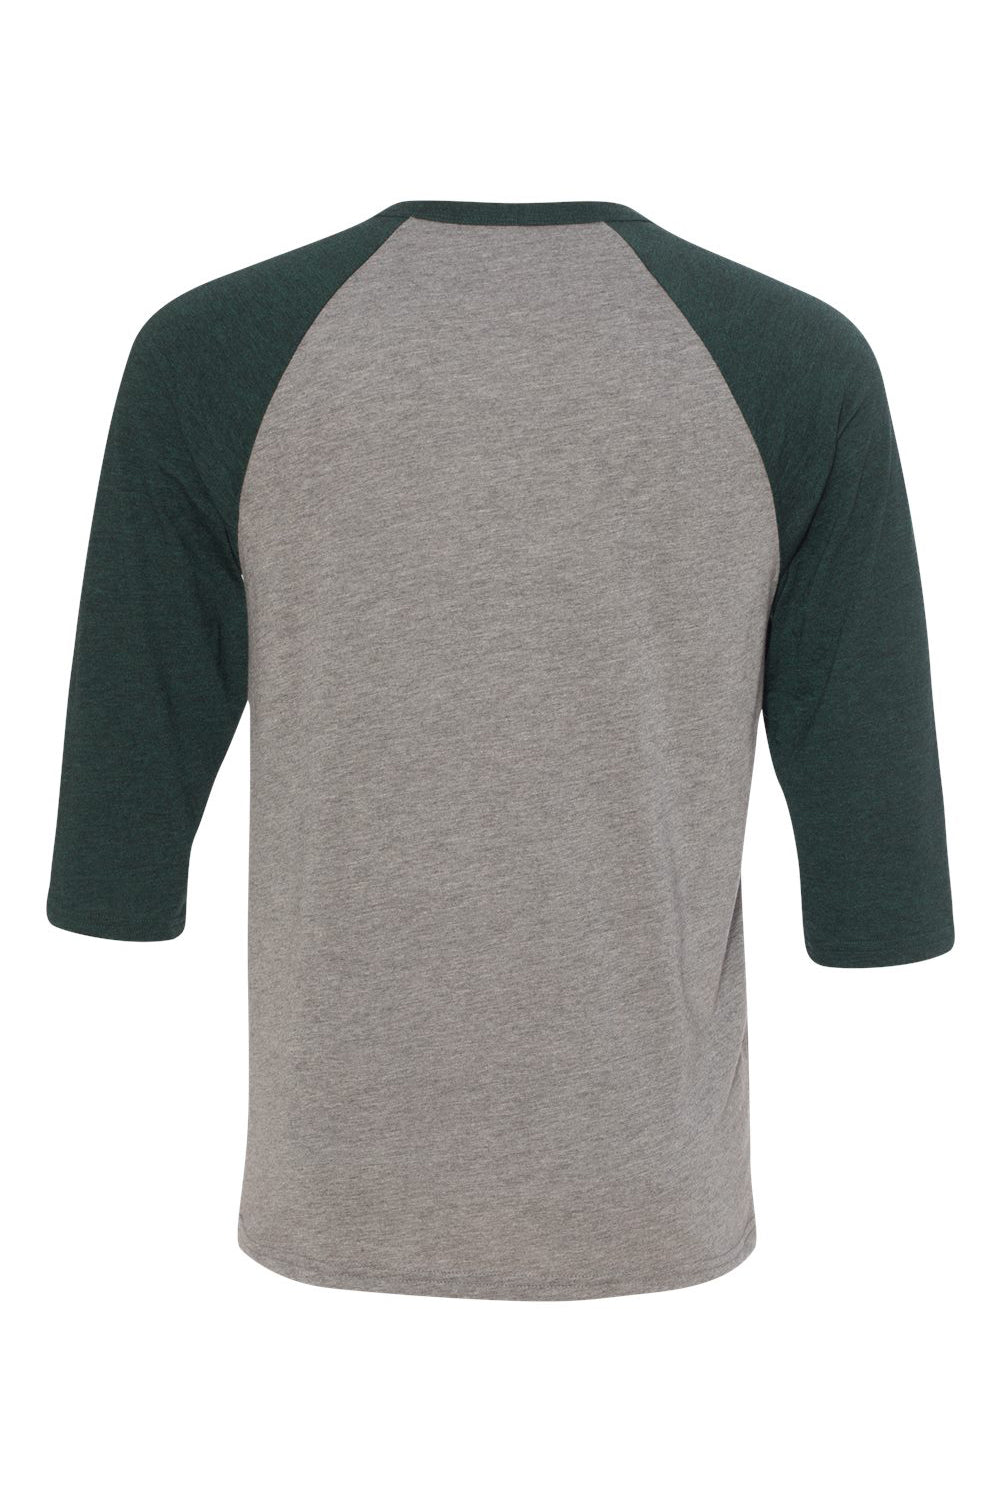 Bella + Canvas BC3200/3200 Mens 3/4 Sleeve Crewneck T-Shirt Grey/Emerald Green Flat Back